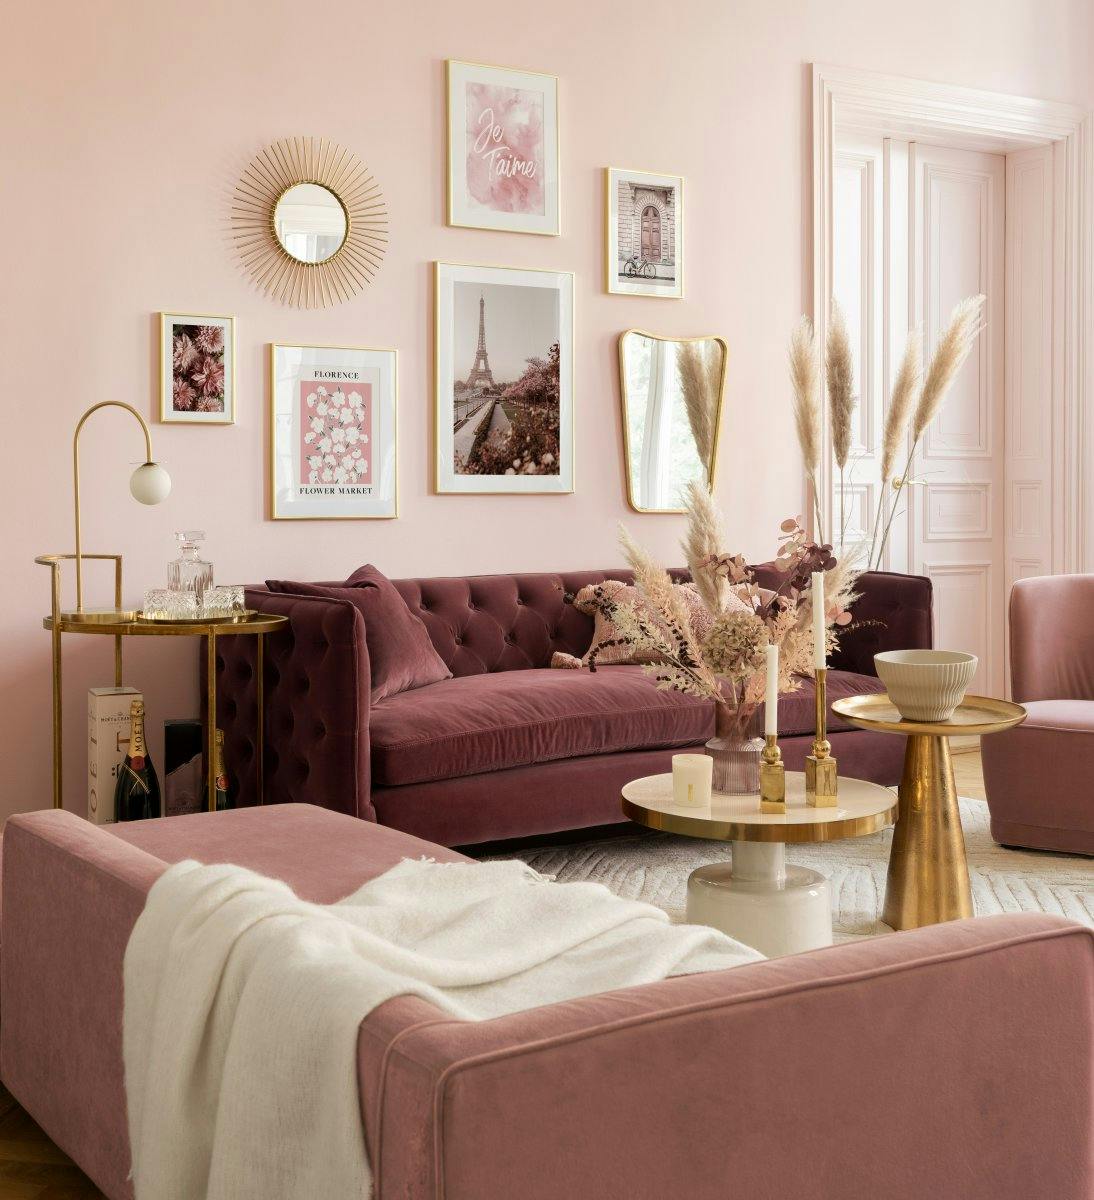 Mur de galerie Paris romantique en rose avec des cadres dorés pour le salon